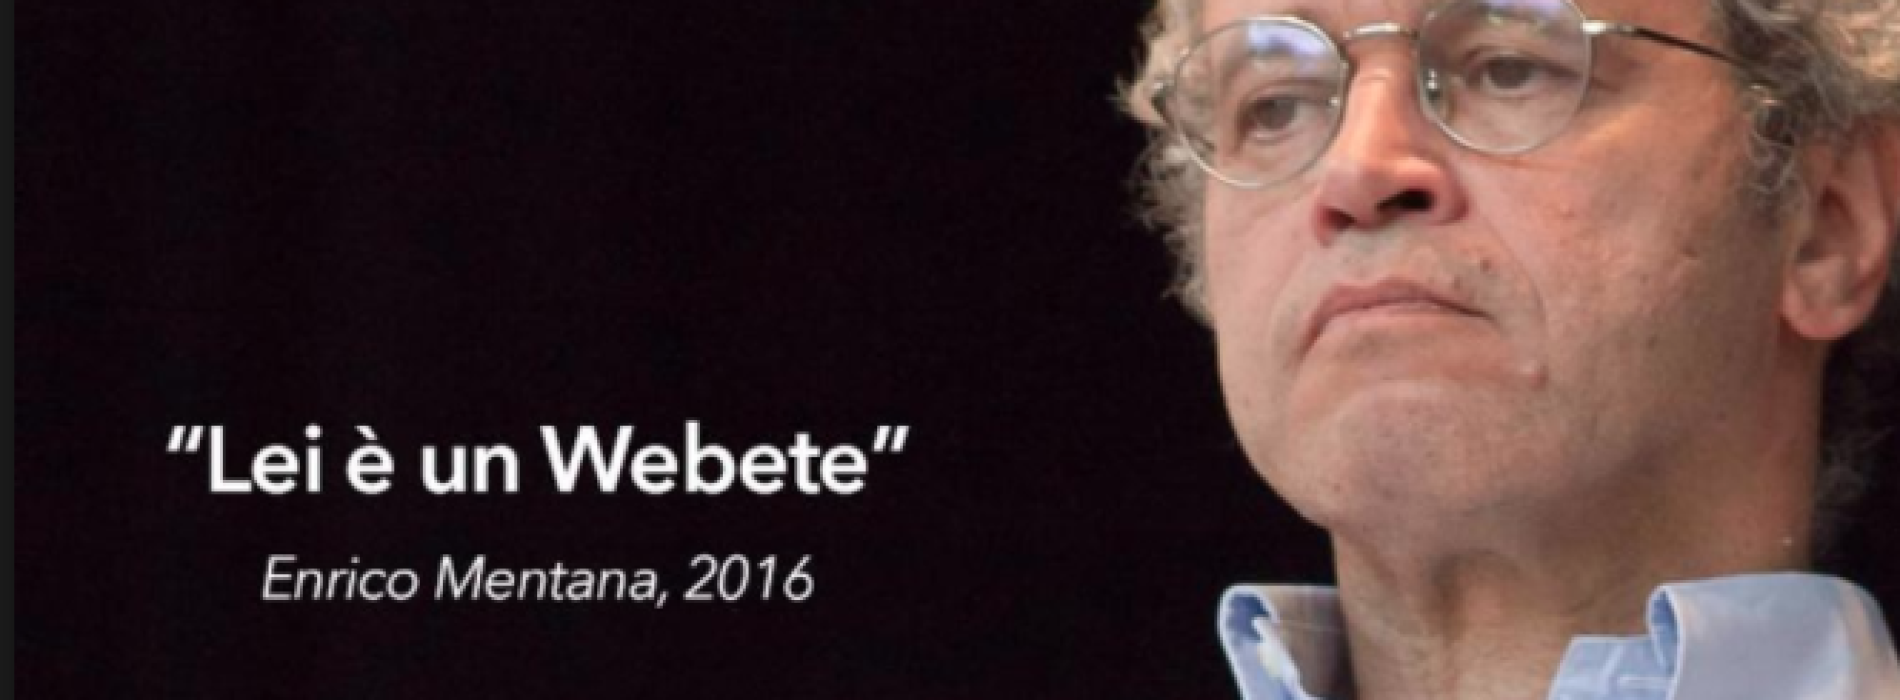 Webete e webetismo: l’ignoranza ai tempi di Internet